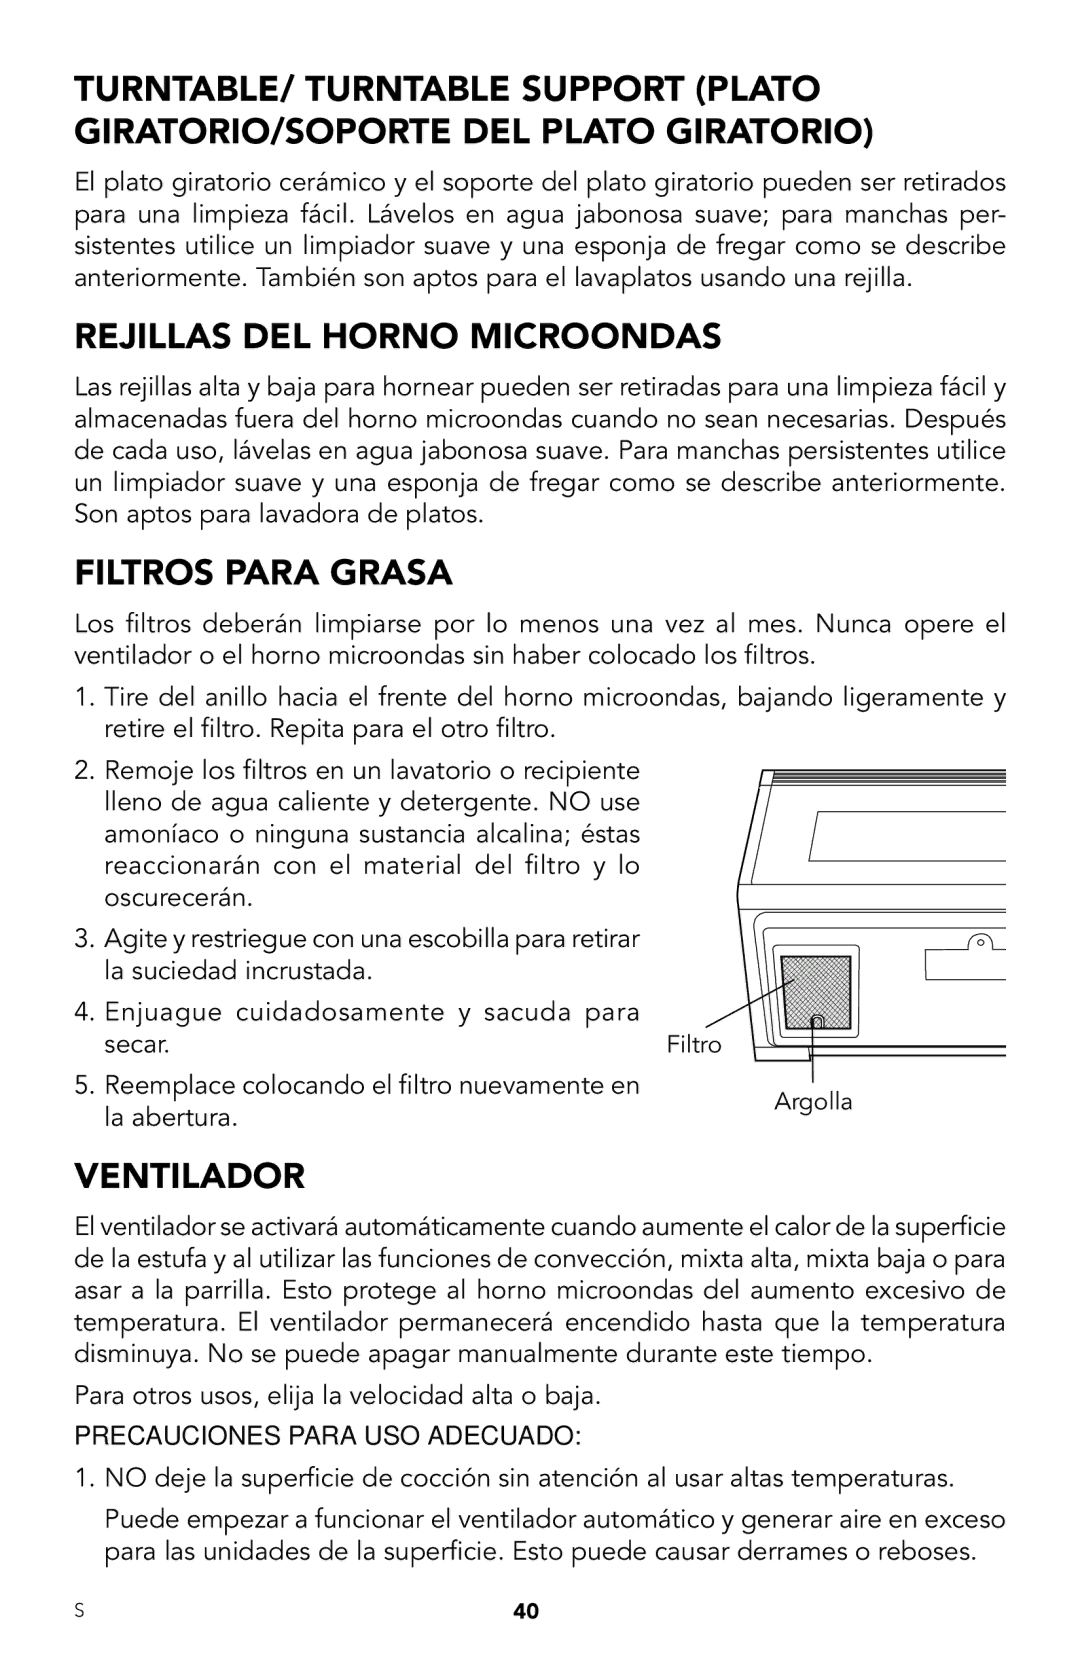 Viking RDMOR206SS manual Rejillas DEL Horno Microondas, Filtros Para Grasa, Ventilador, Precauciones Para USO Adecuado 